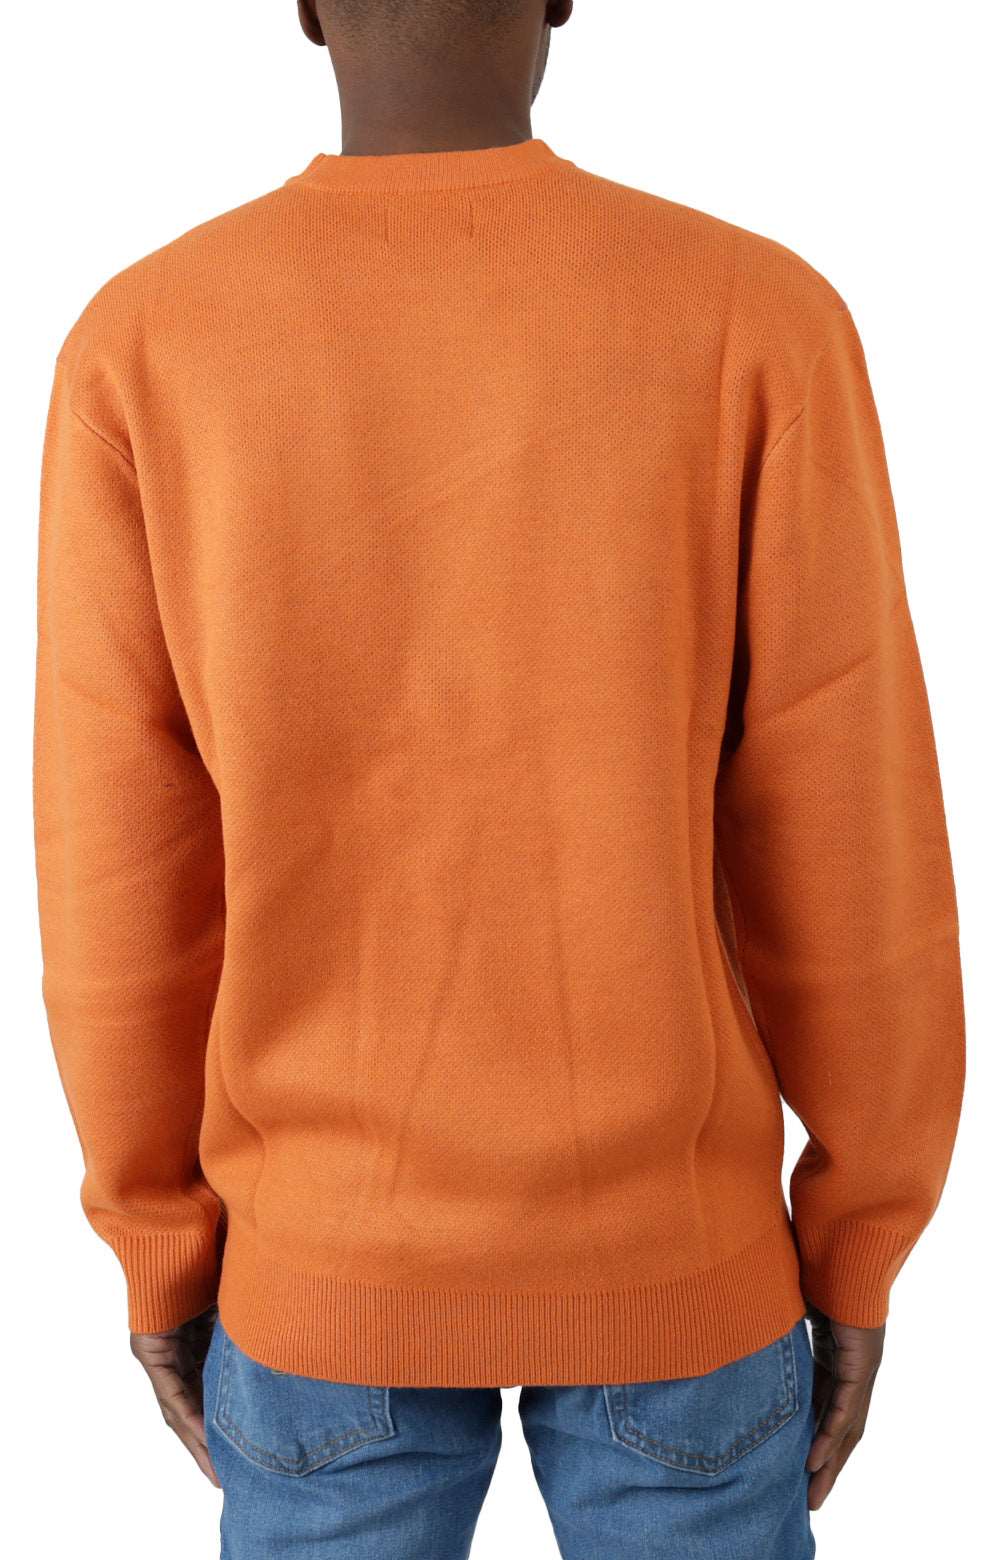 Butterfly Knit Sweater - Burnt Orange